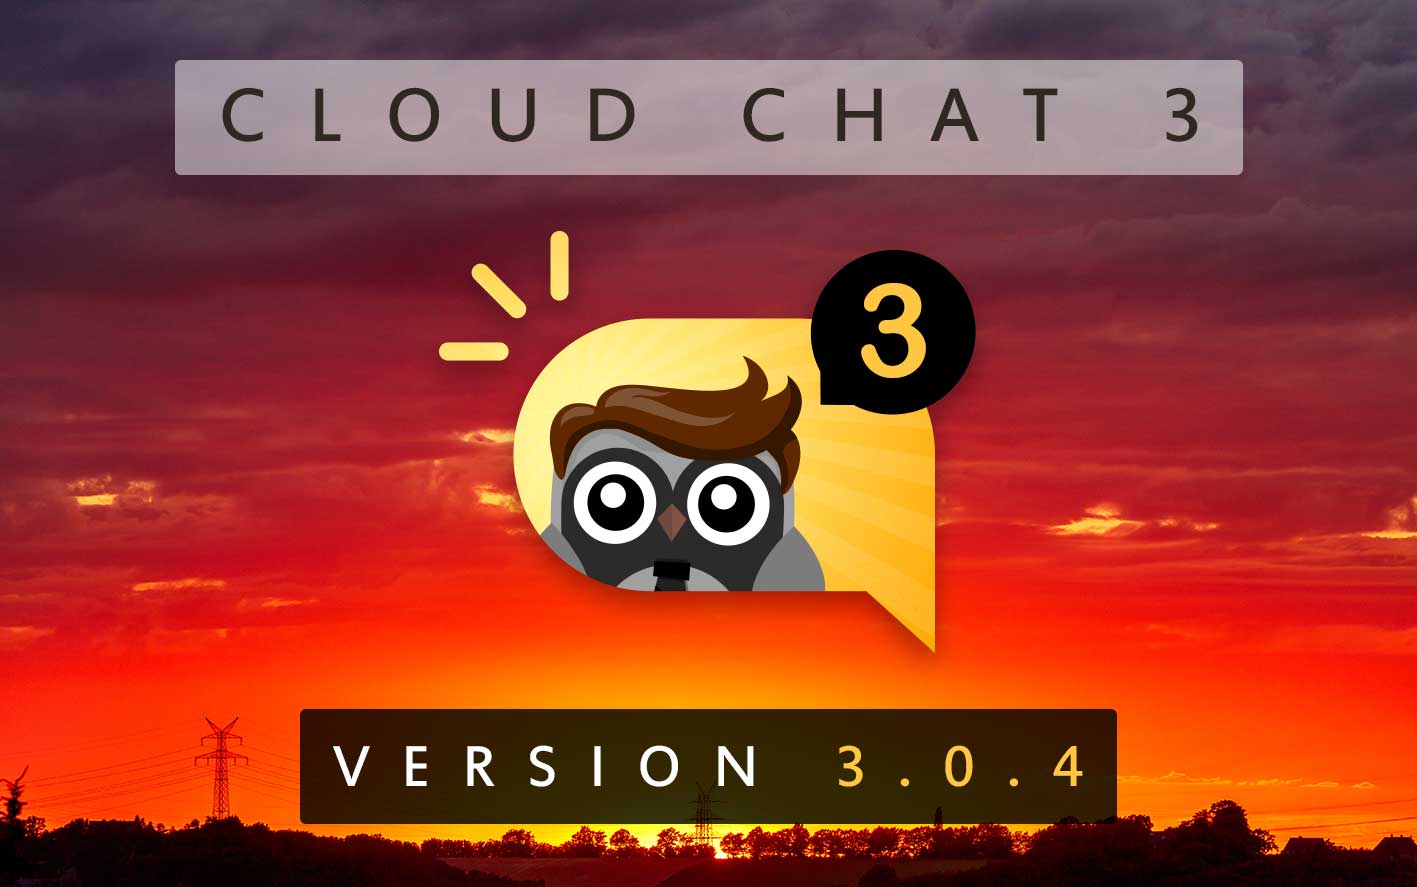 Cloud Chat 3 - Version 3.0.4